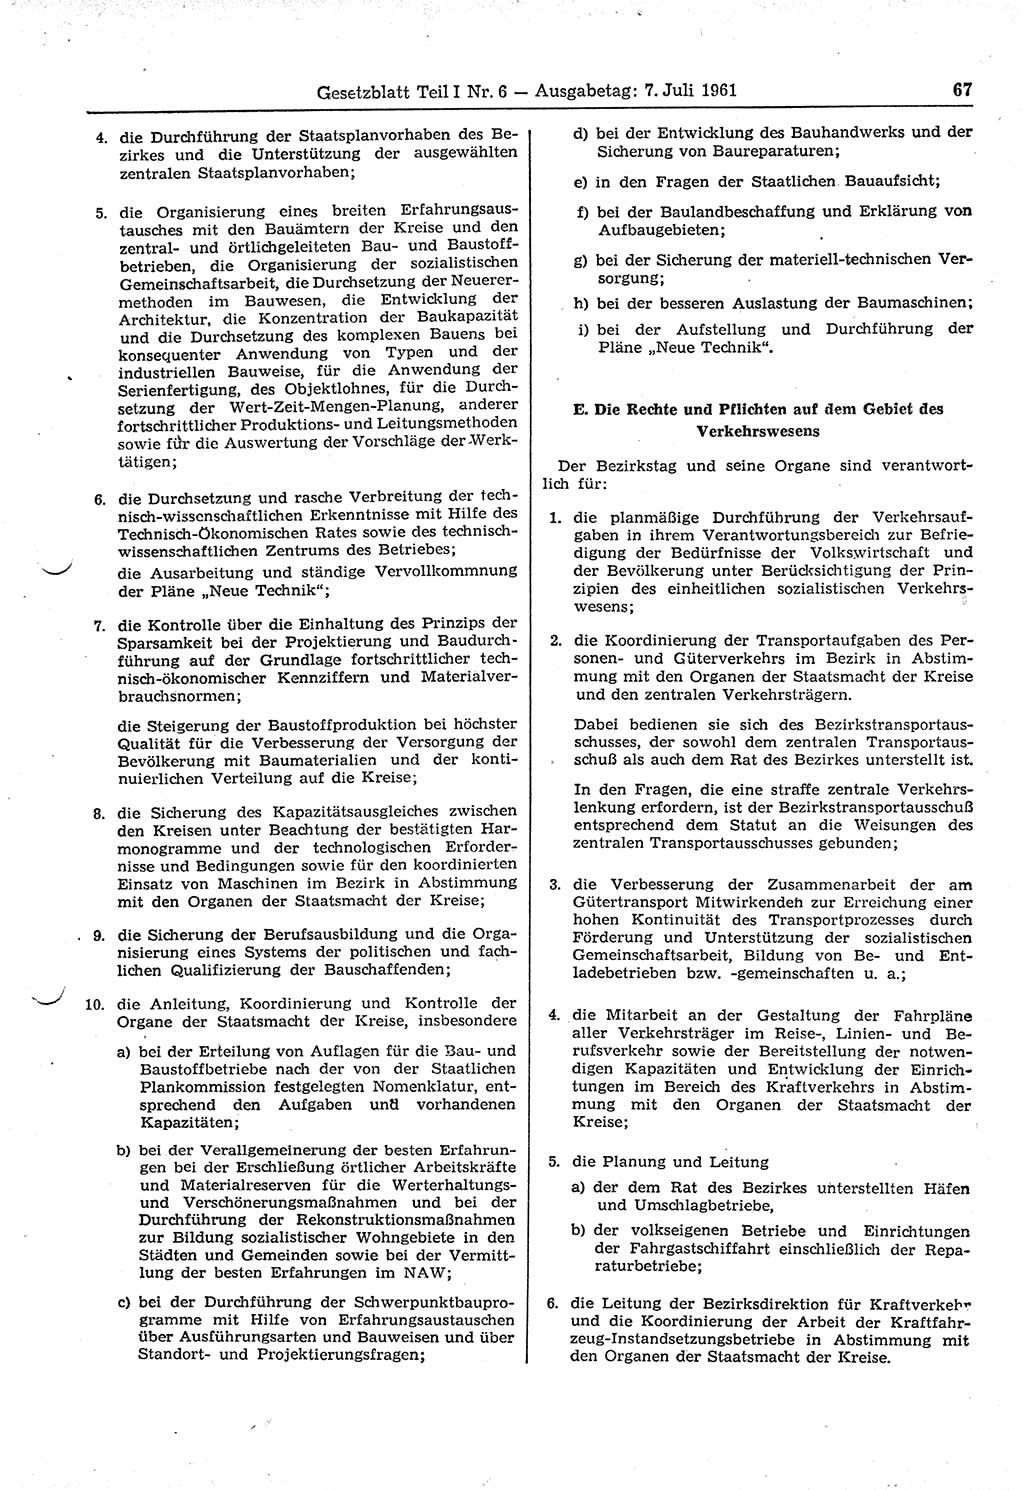 Gesetzblatt (GBl.) der Deutschen Demokratischen Republik (DDR) Teil Ⅰ 1961, Seite 67 (GBl. DDR Ⅰ 1961, S. 67)